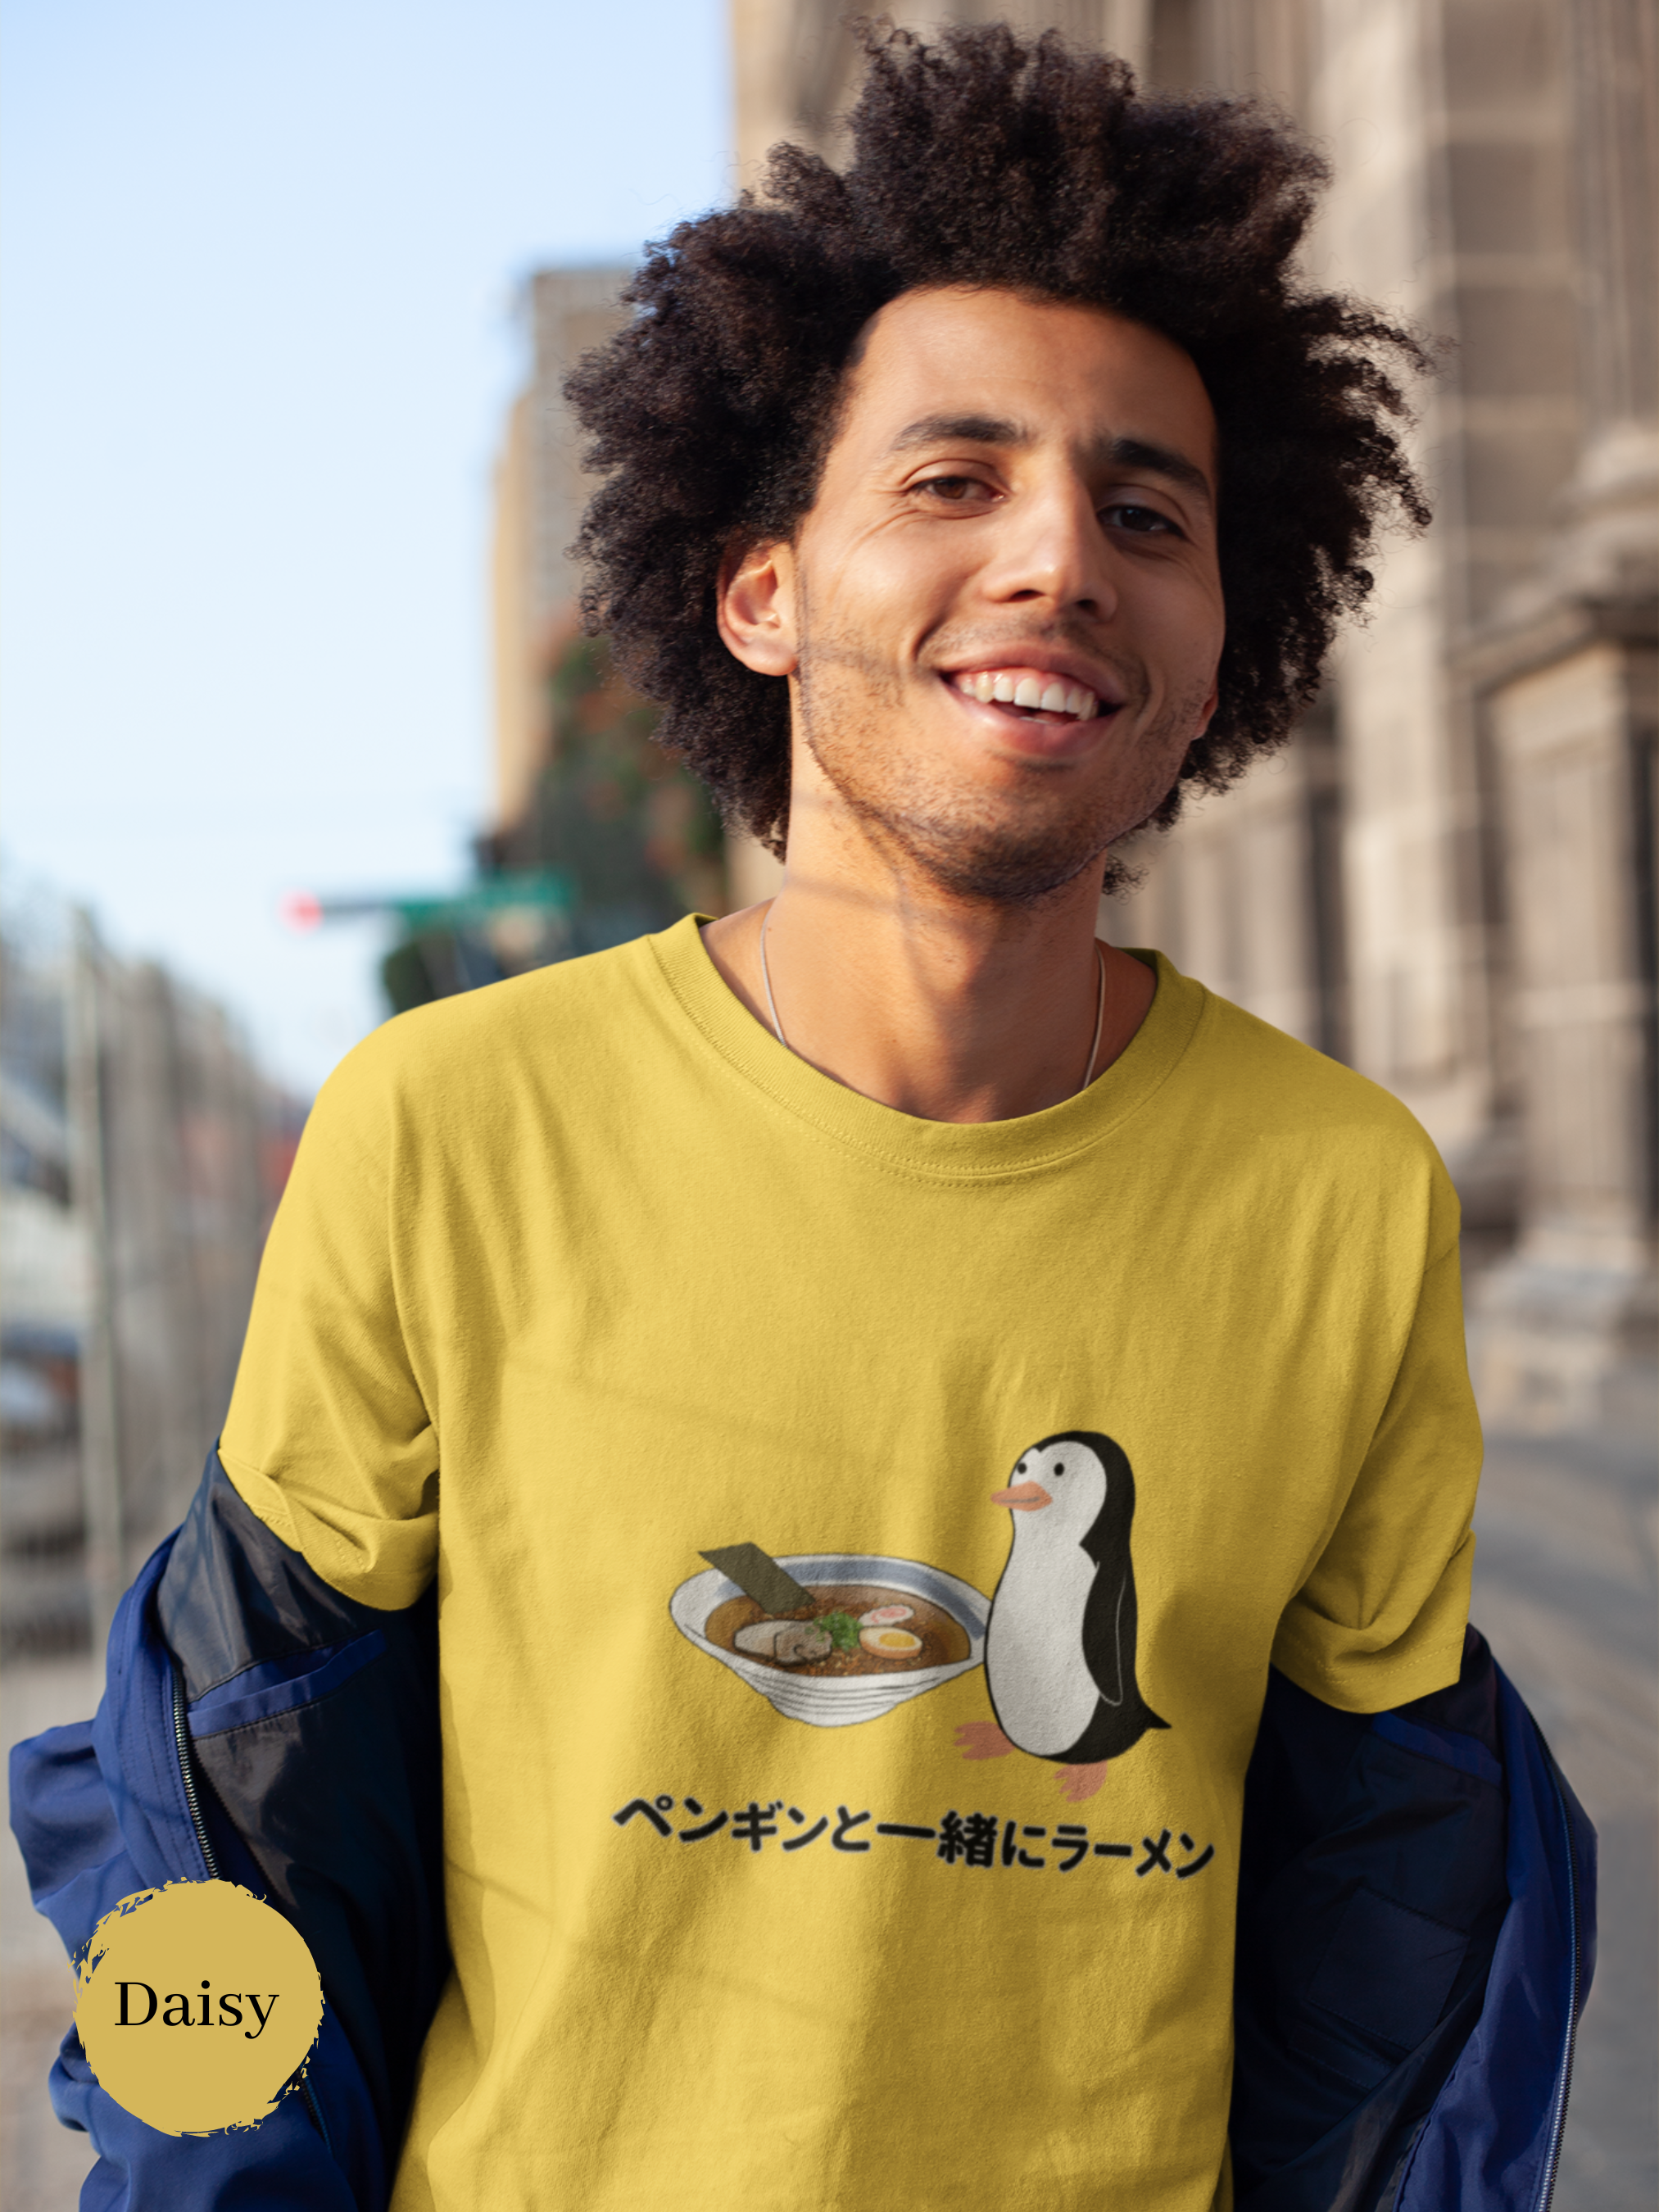 Ramen T-shirt: Penguin and Ramen Delight - Japanese Foodie Shirt with Ramen Art